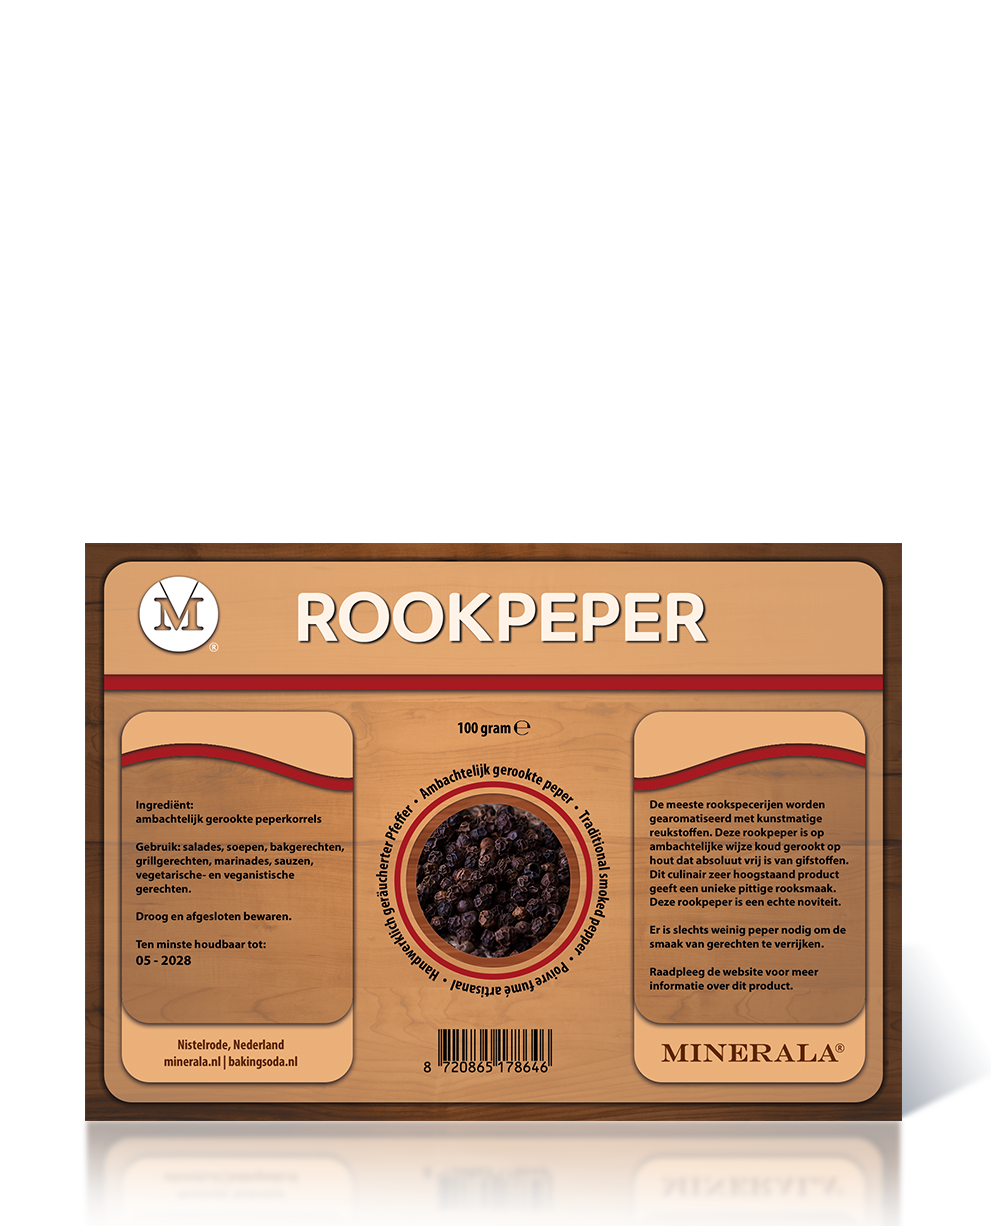 Minerala - Rookpeper Baking Soda NL Nistelrode